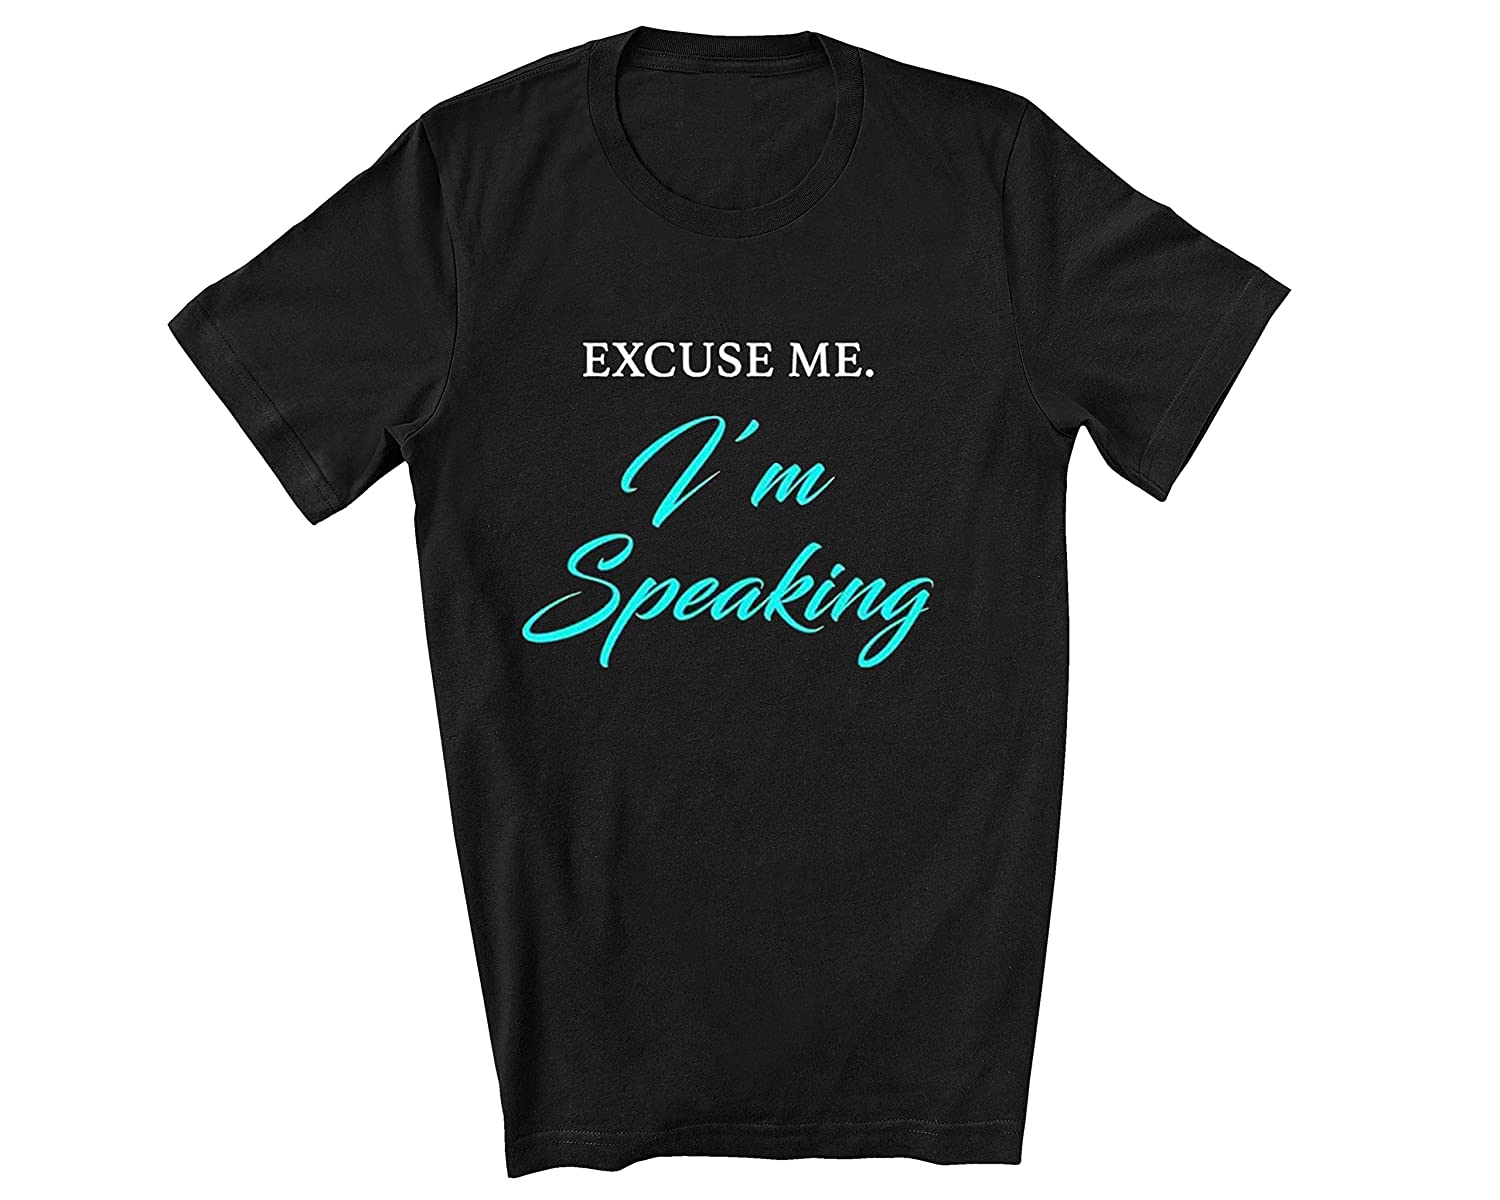 Excuse me I'm speaking shirt